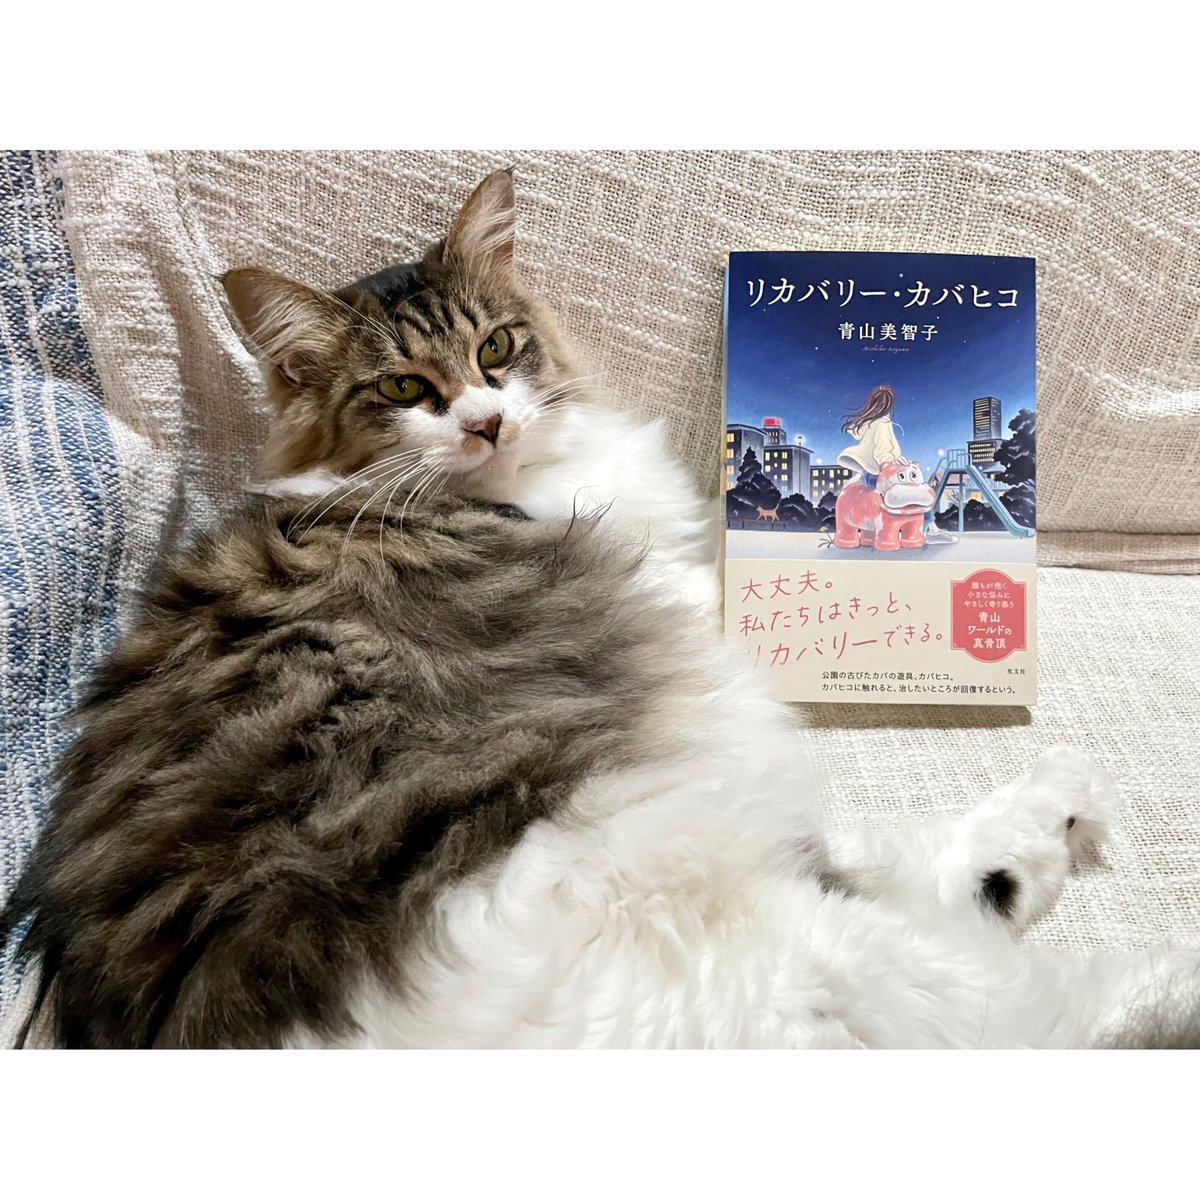 リカバリー・カバヒコ | Cat's Meow Books Virtual Shop β